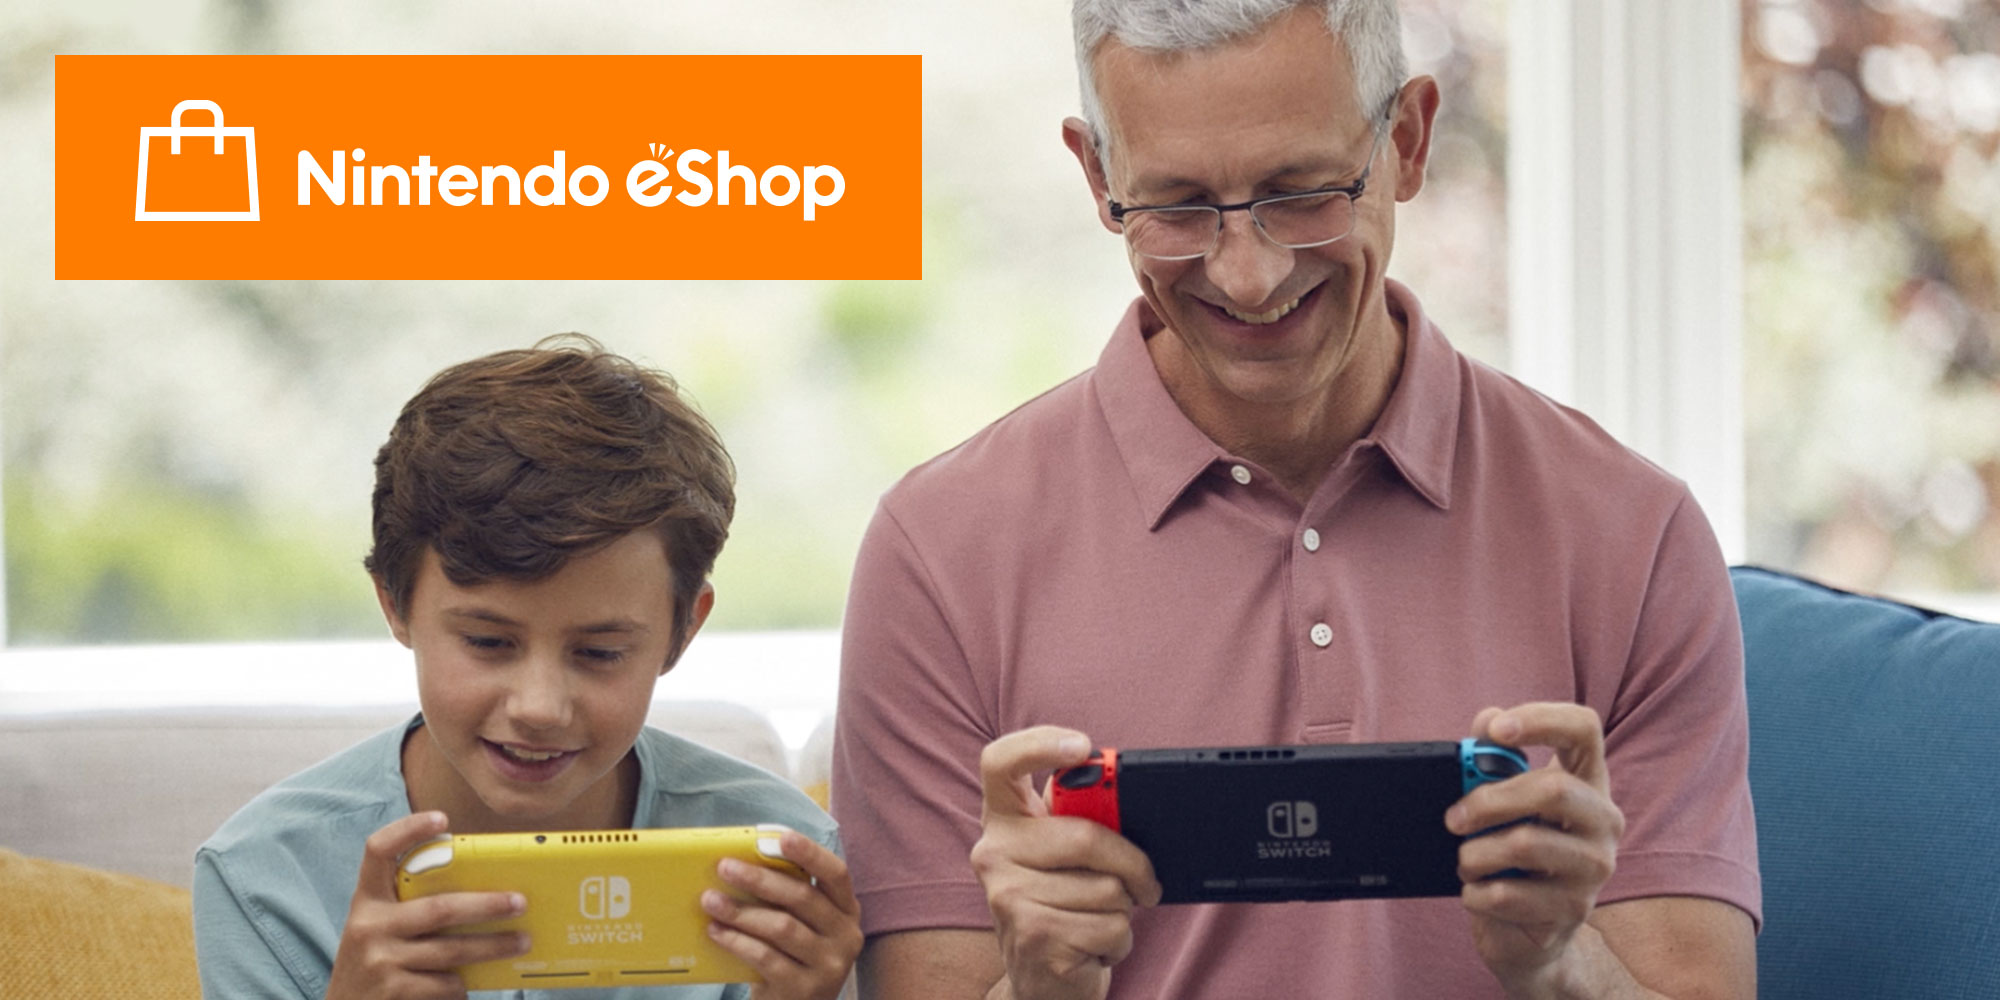 Descobre todas as vantagens da Nintendo eShop na tua Nintendo Switch!